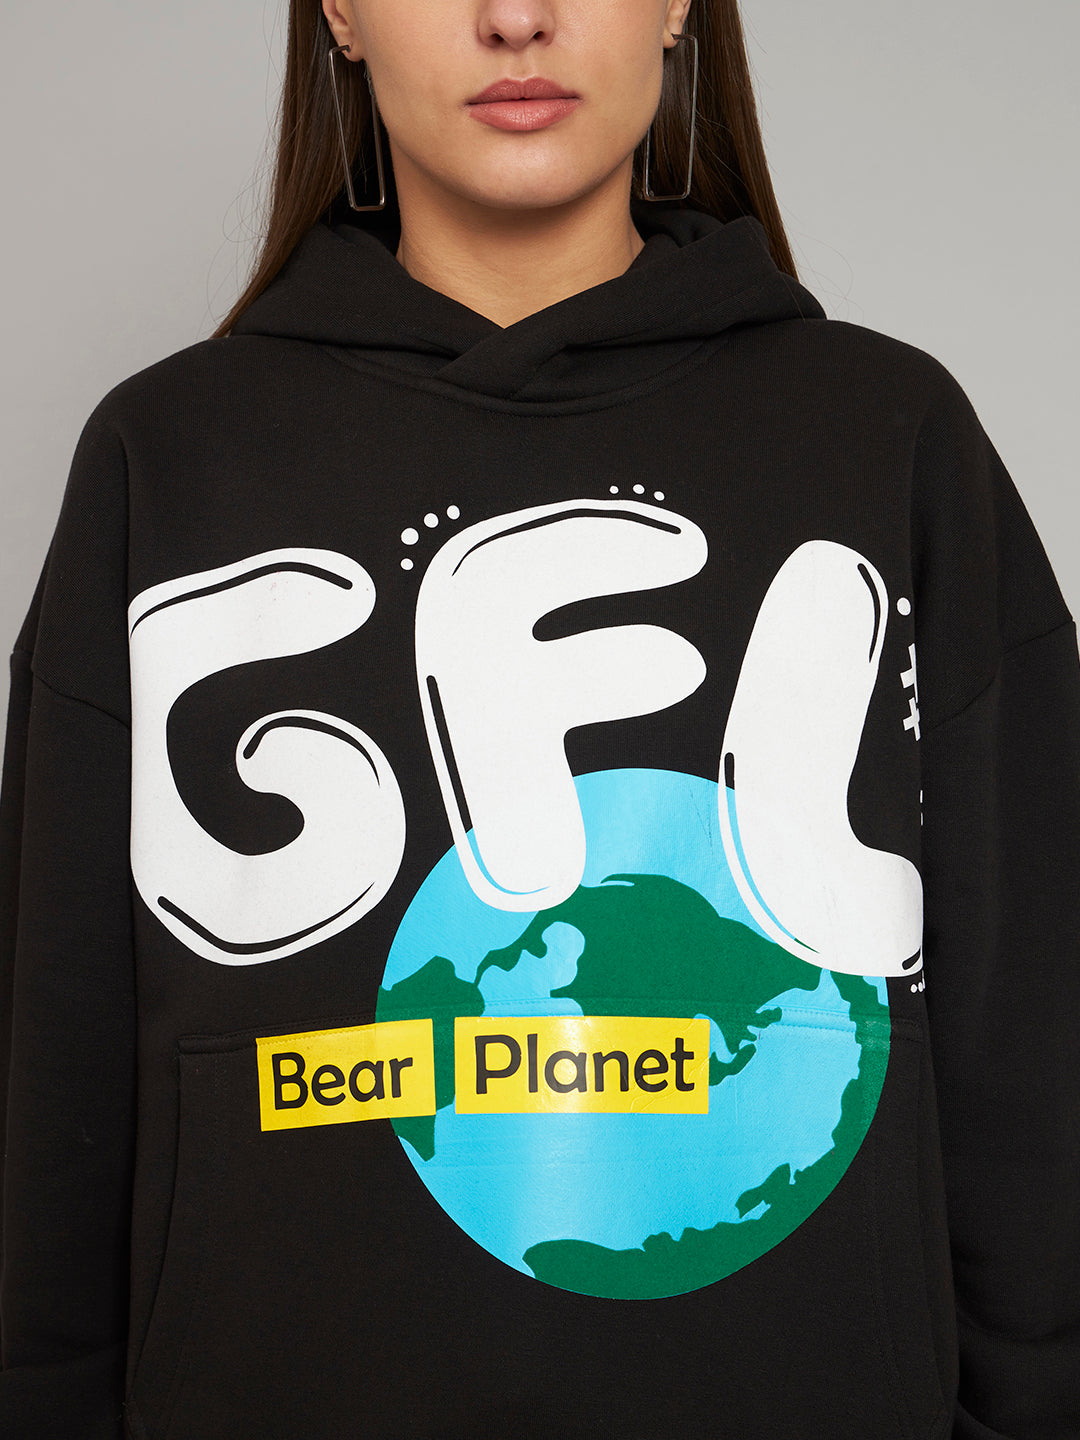 Griffel Women's Black GFL Bear Planet print Oversized Fleece Hoodie Sweatshirt